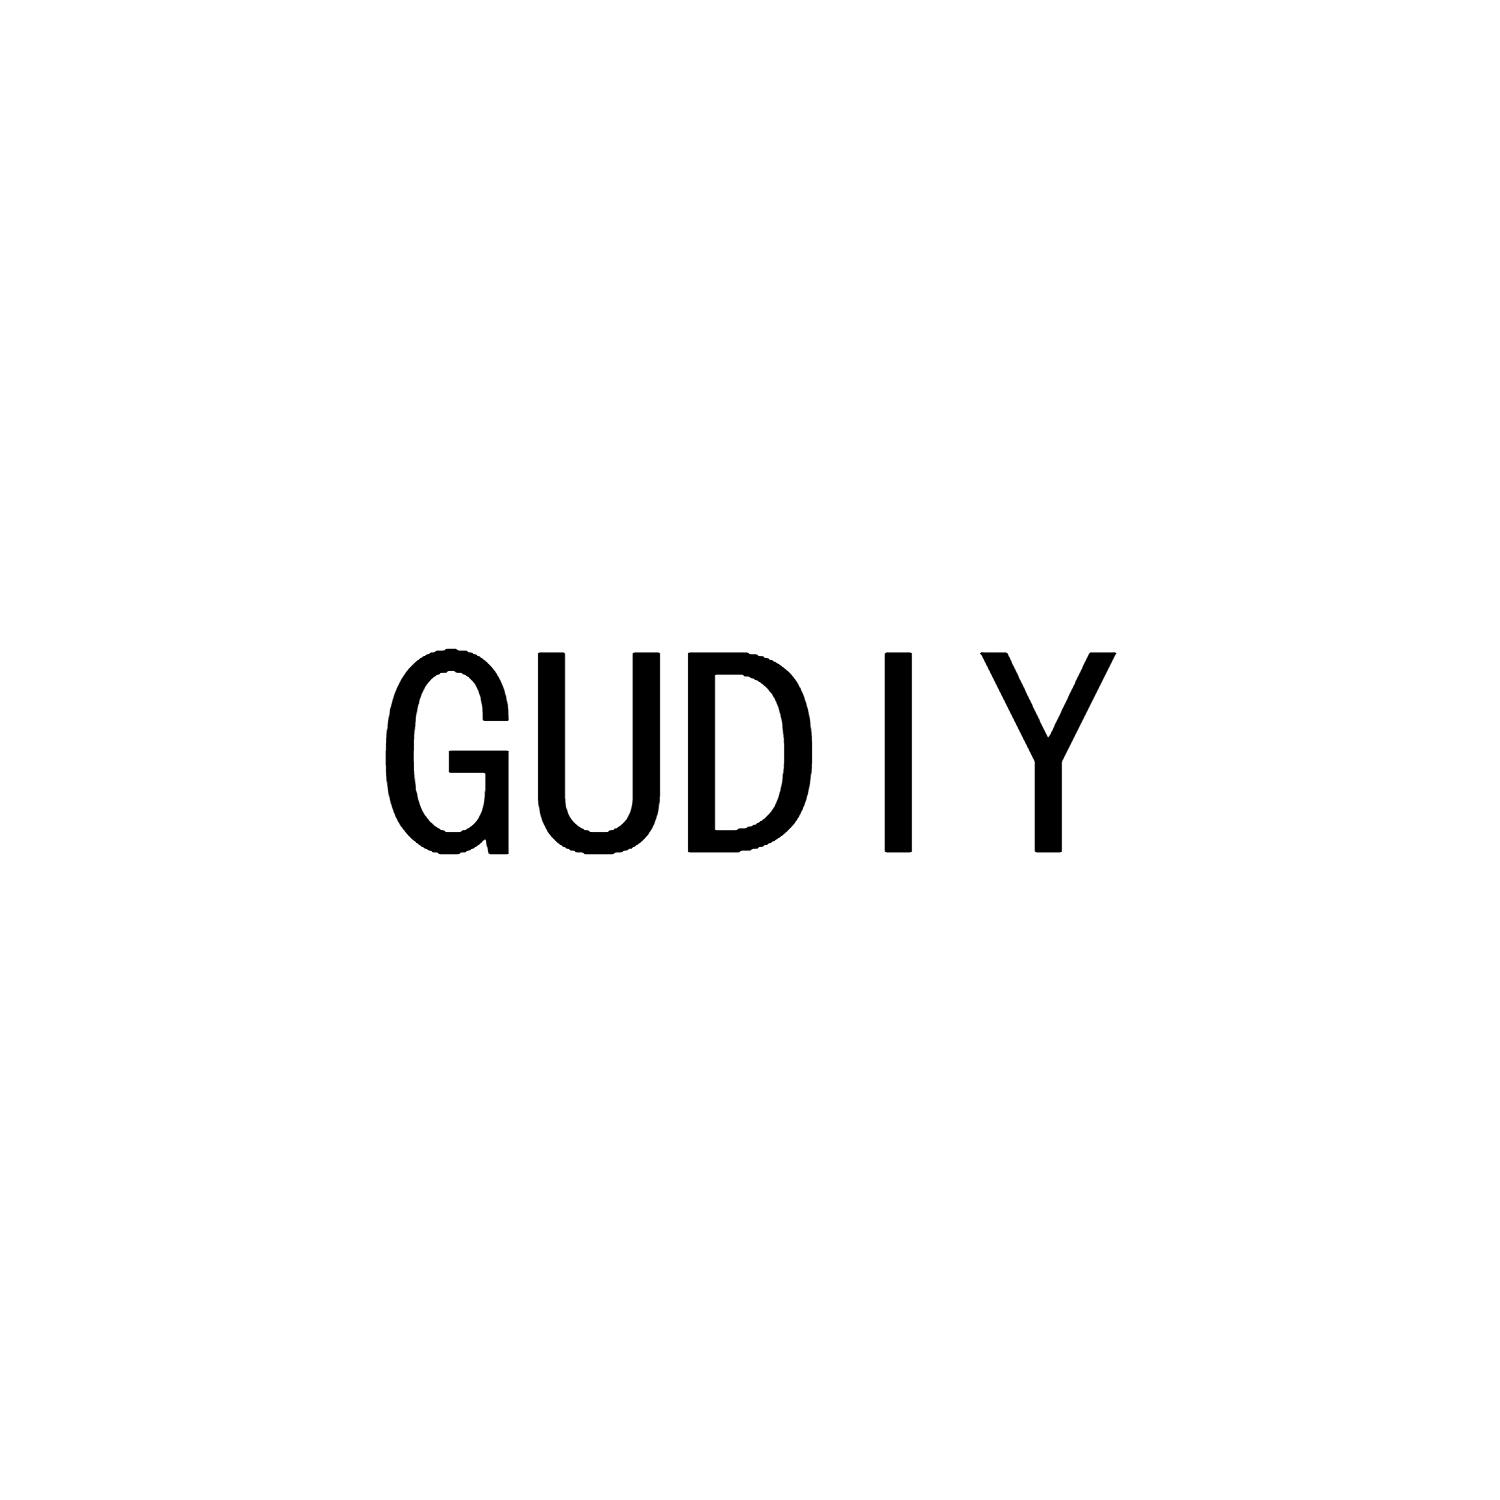 GUDIY